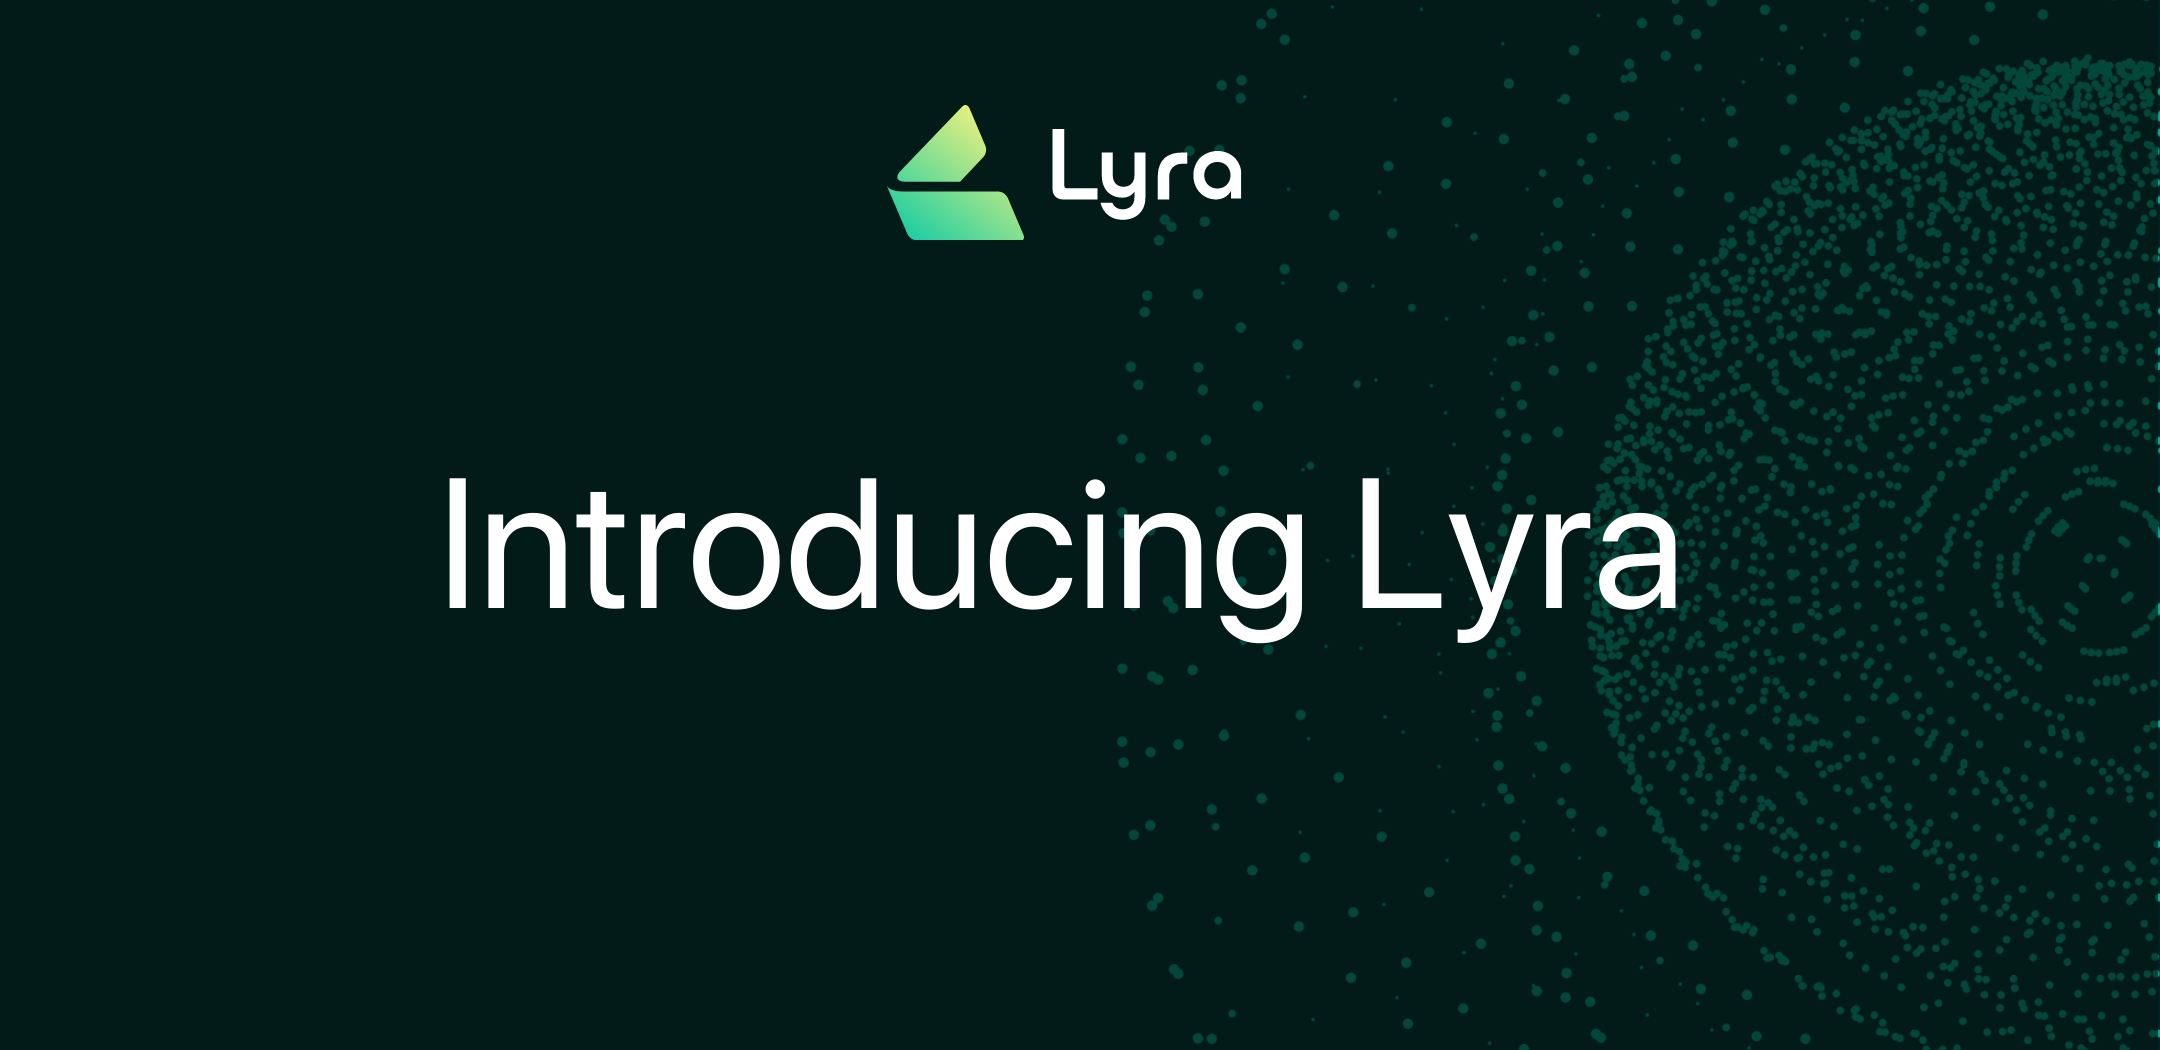 Introducing Lyra